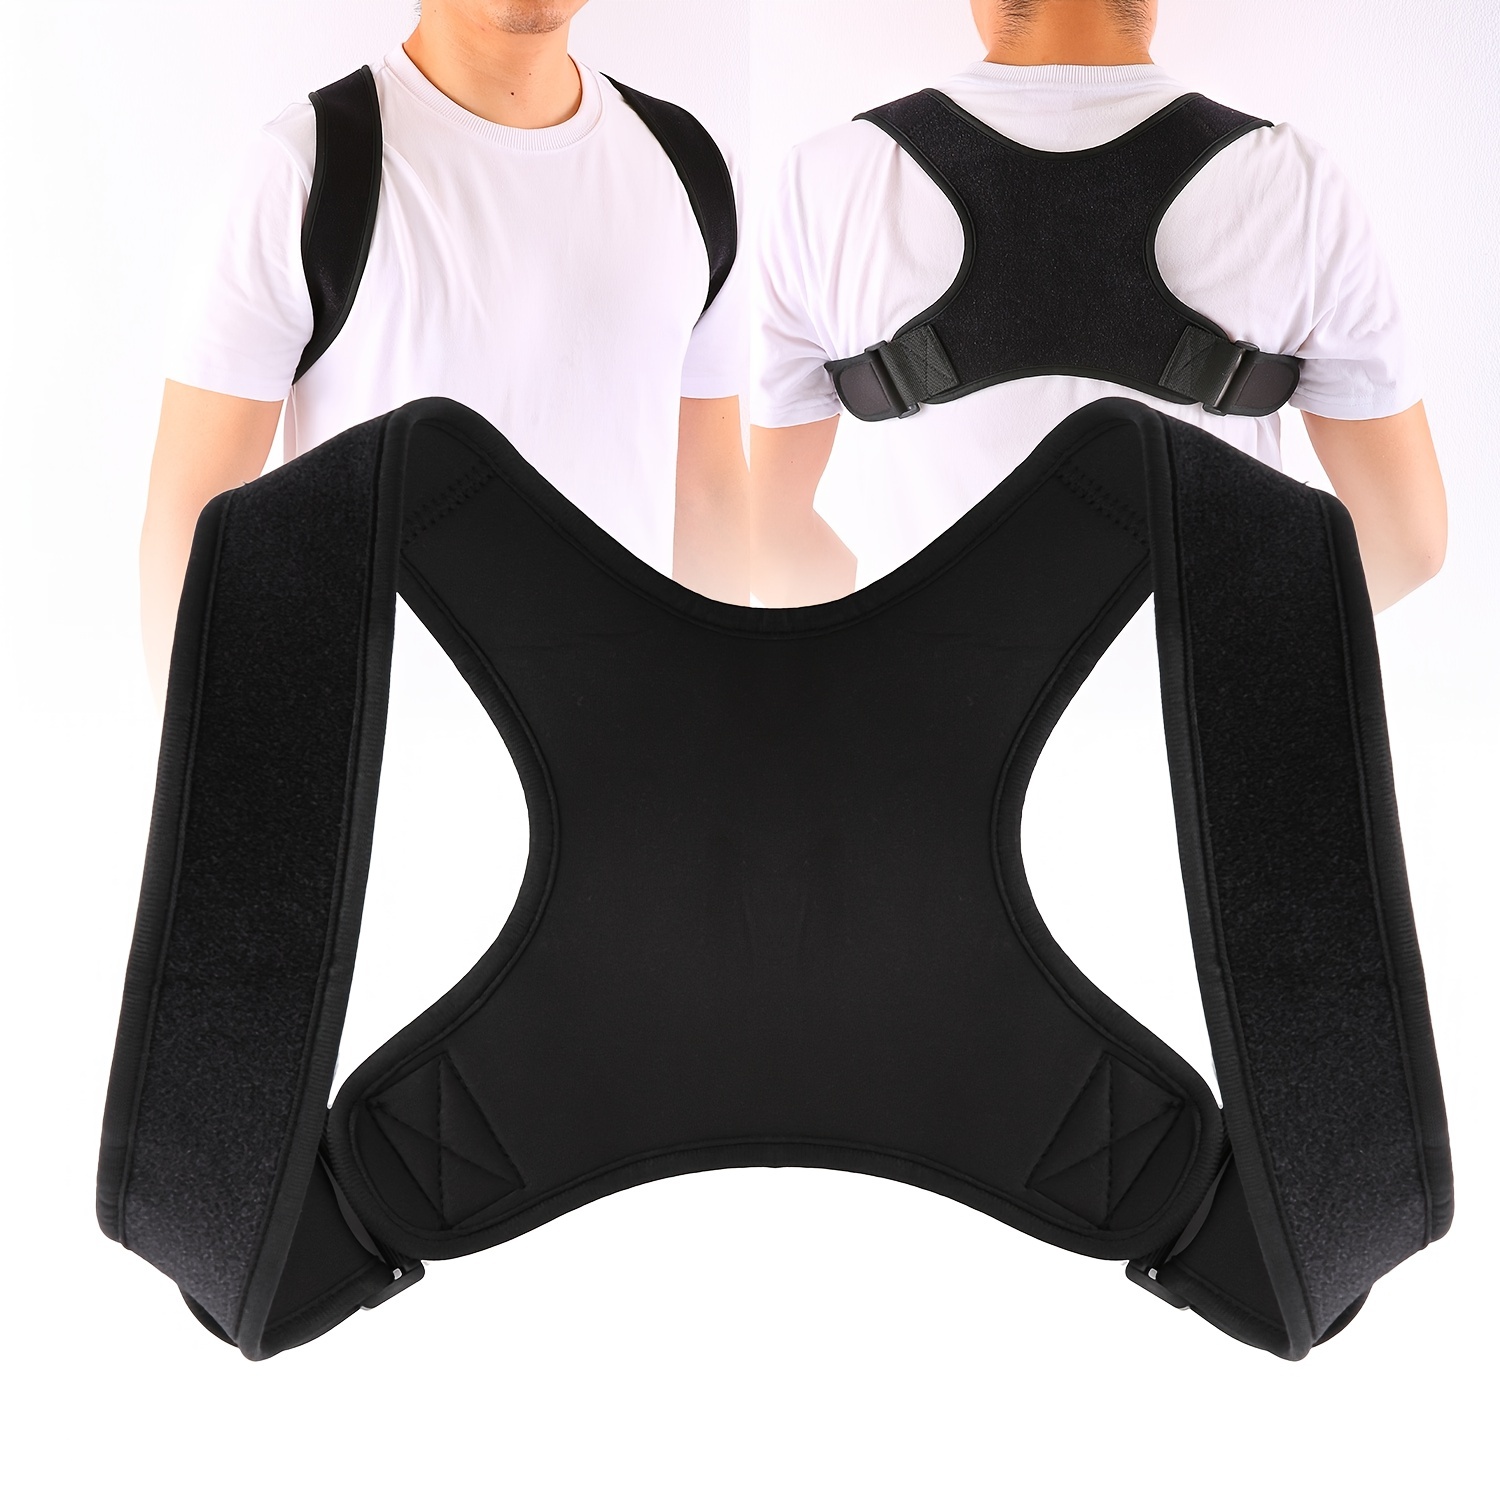 Aolikes Posture Corrector Adjustable Single Shoulder Support Belt